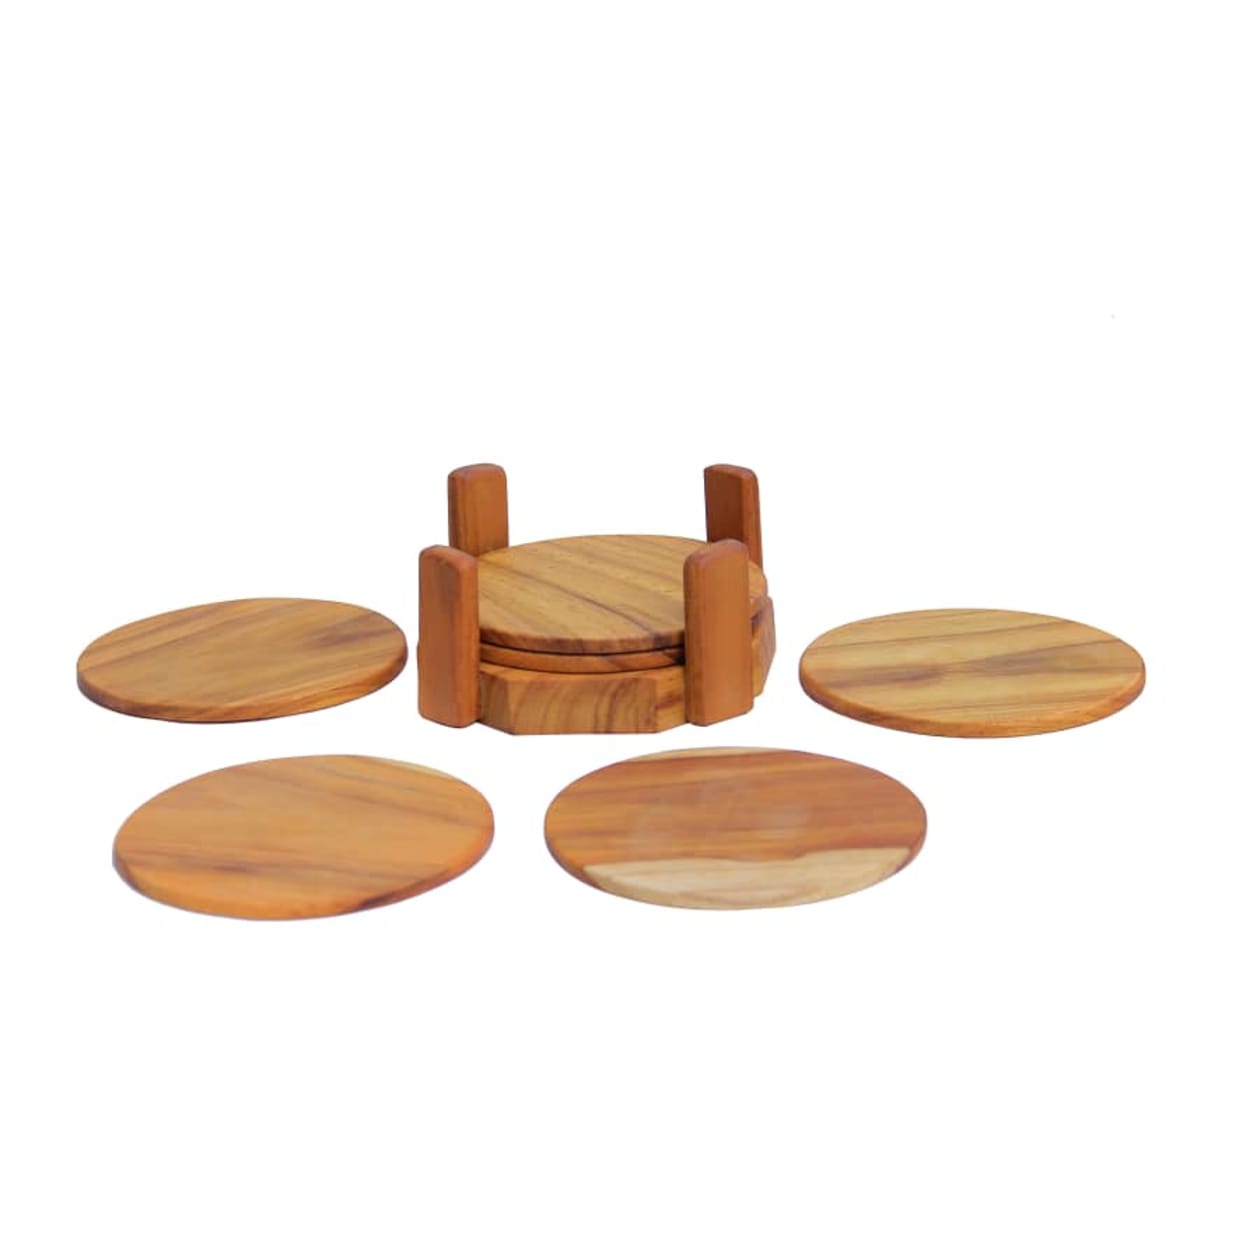 Teak Wood Coasters - Set of 6